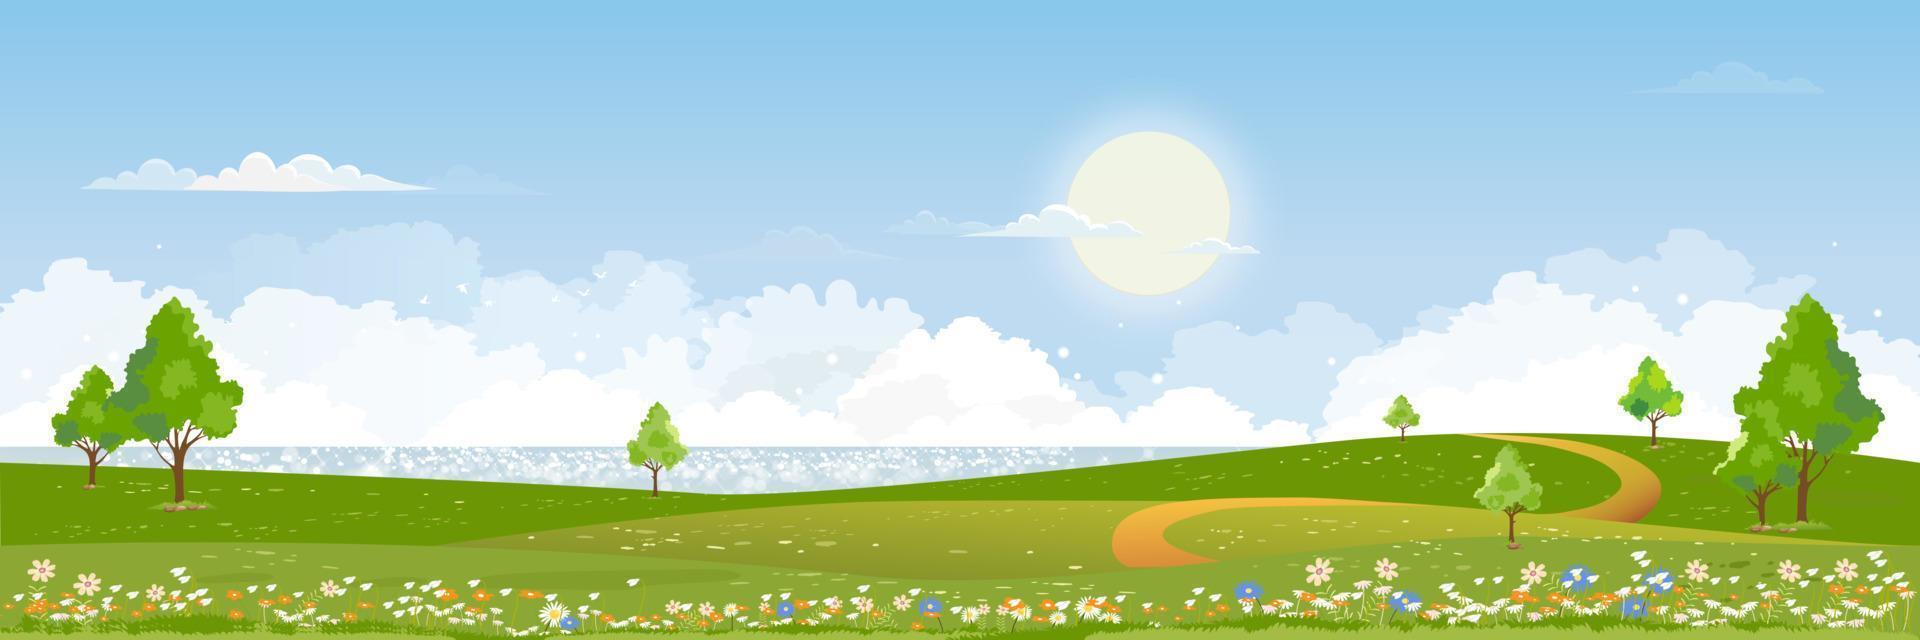 voorjaar groen velden landschap door de blauw meer lucht en wolken achtergrond, panorama vredig landelijk natuur in lente met groen gras land. tekenfilm vector illustratie voor voorjaar en zomer banier